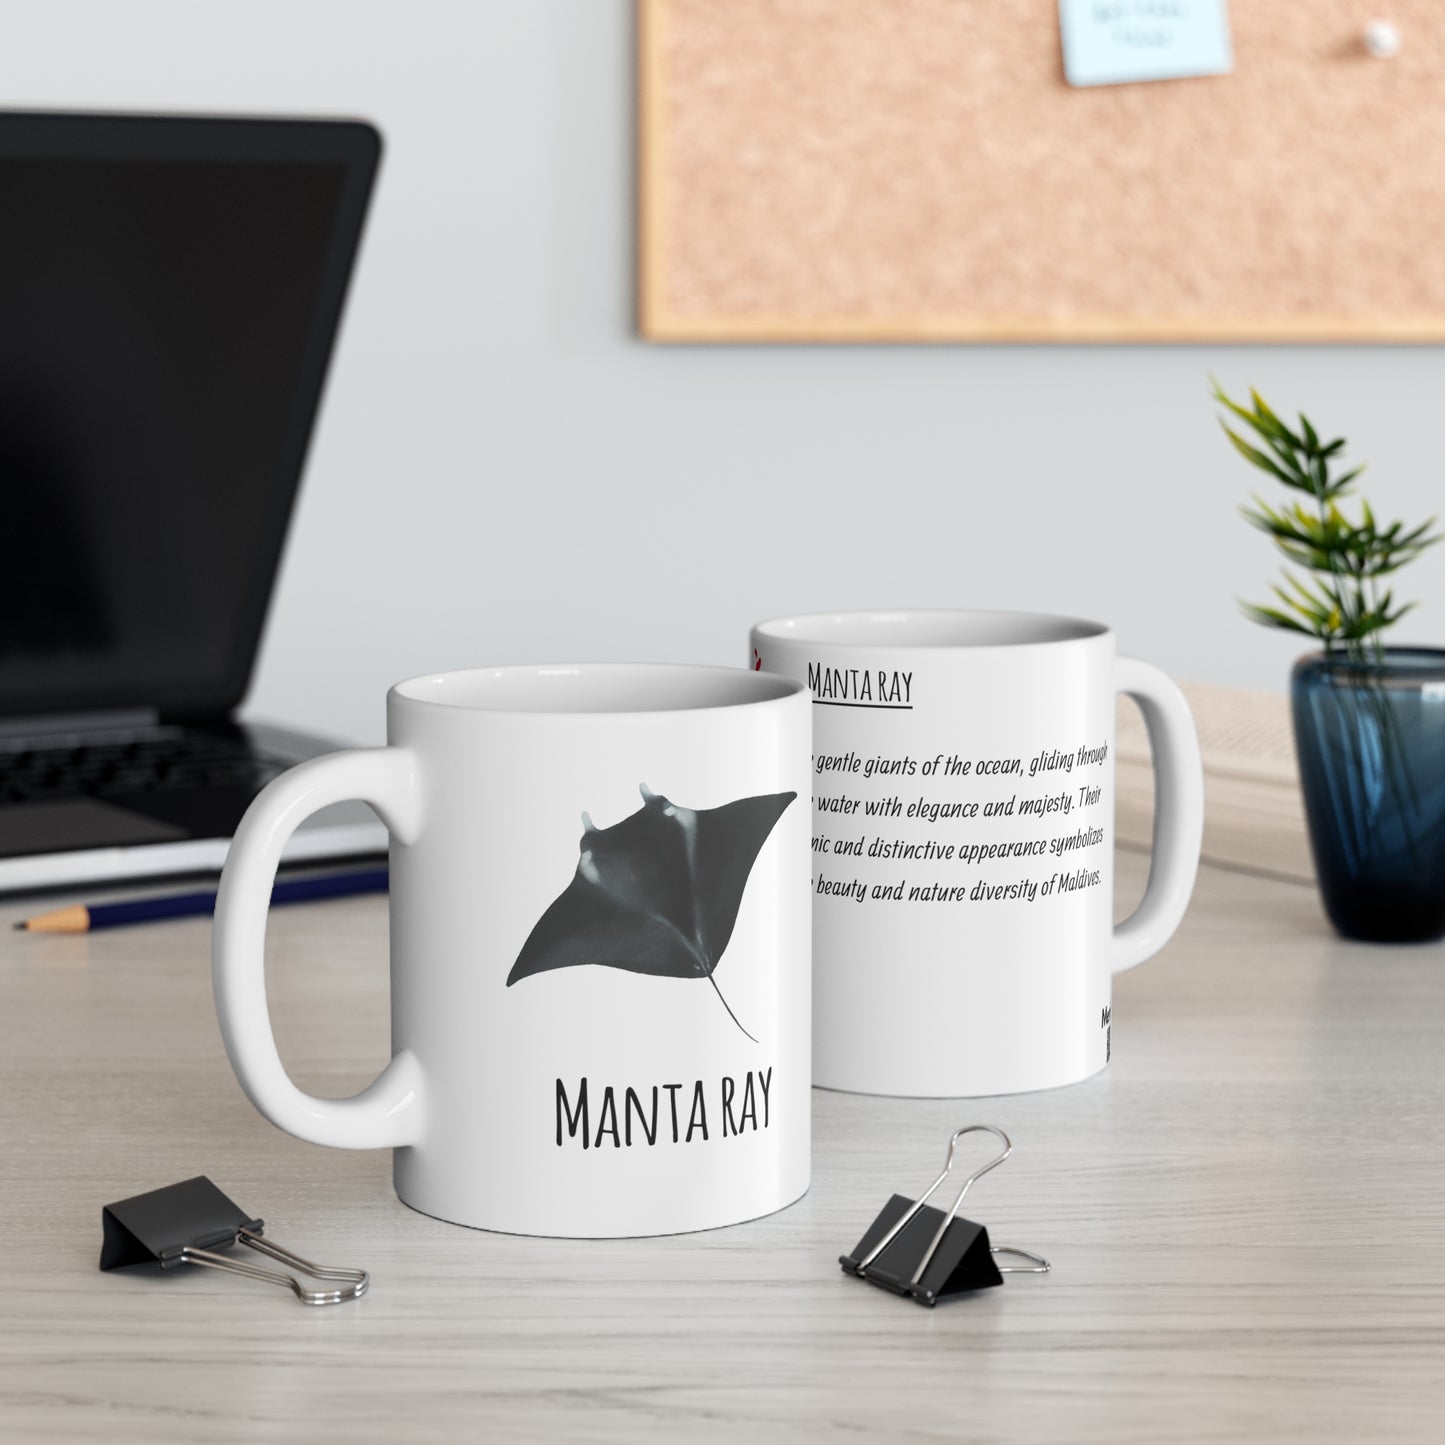 Manta ray - Ceramic Mug 11oz